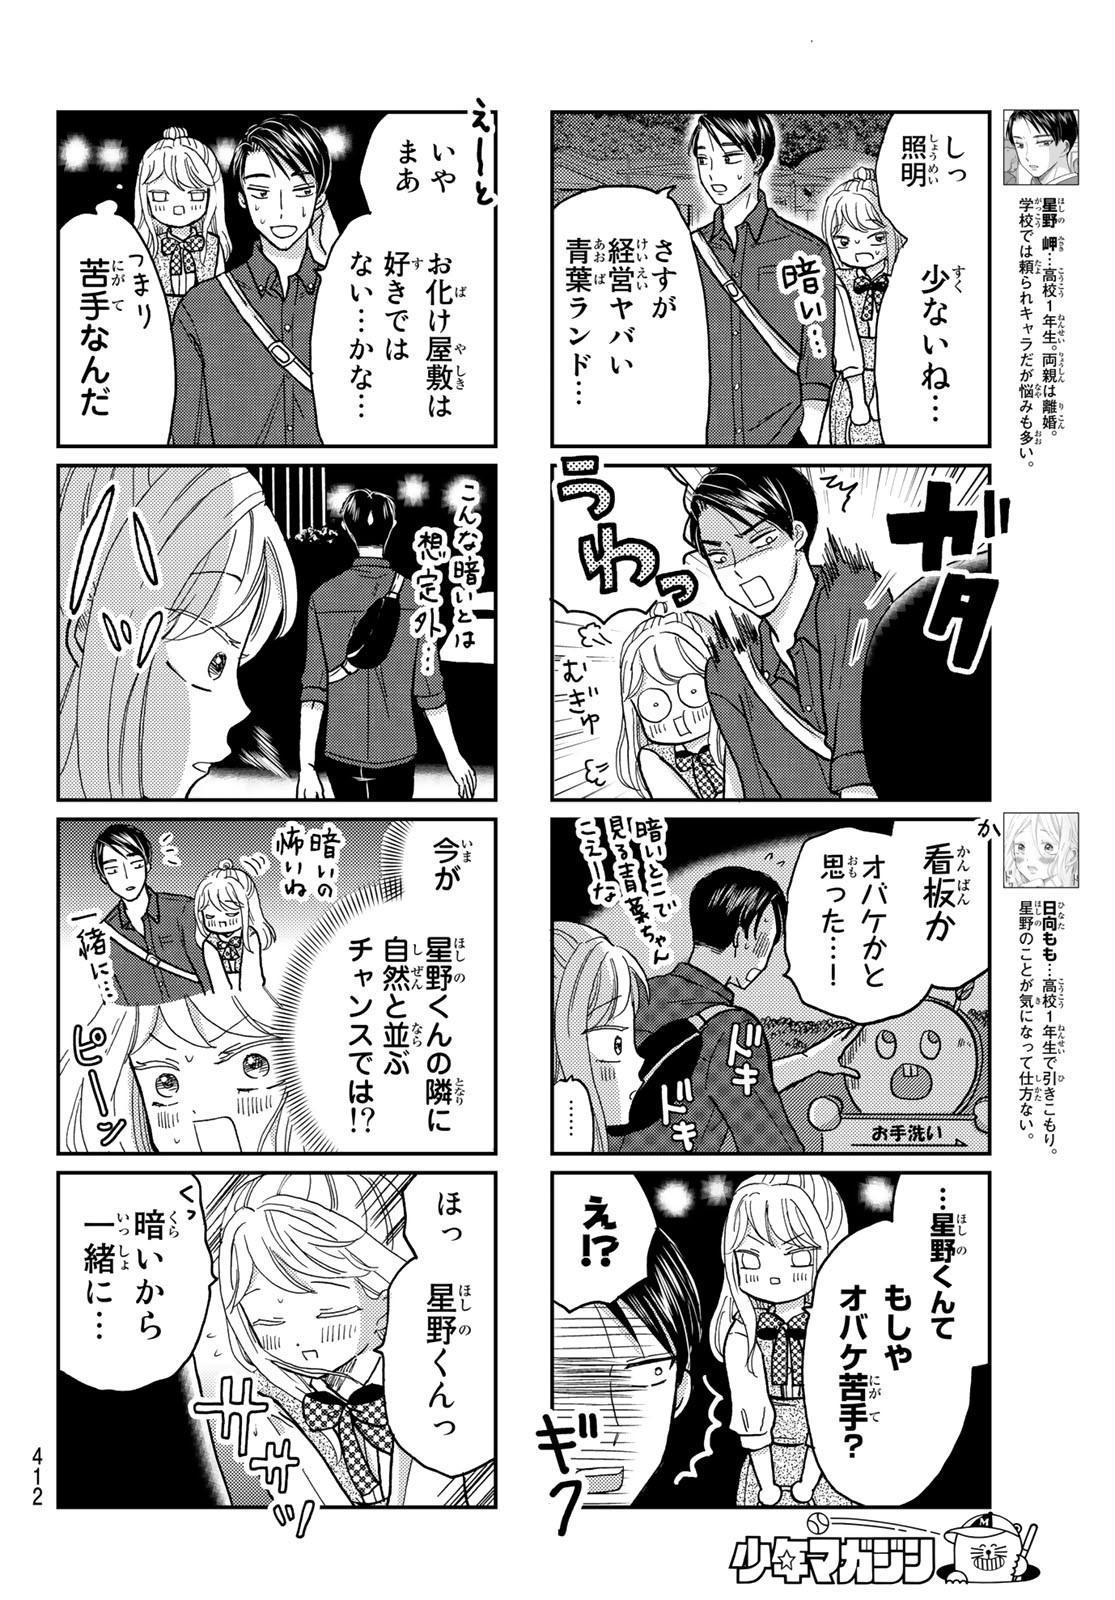 Hinata-san, Hoshino desu. - Chapter 032 - Page 4